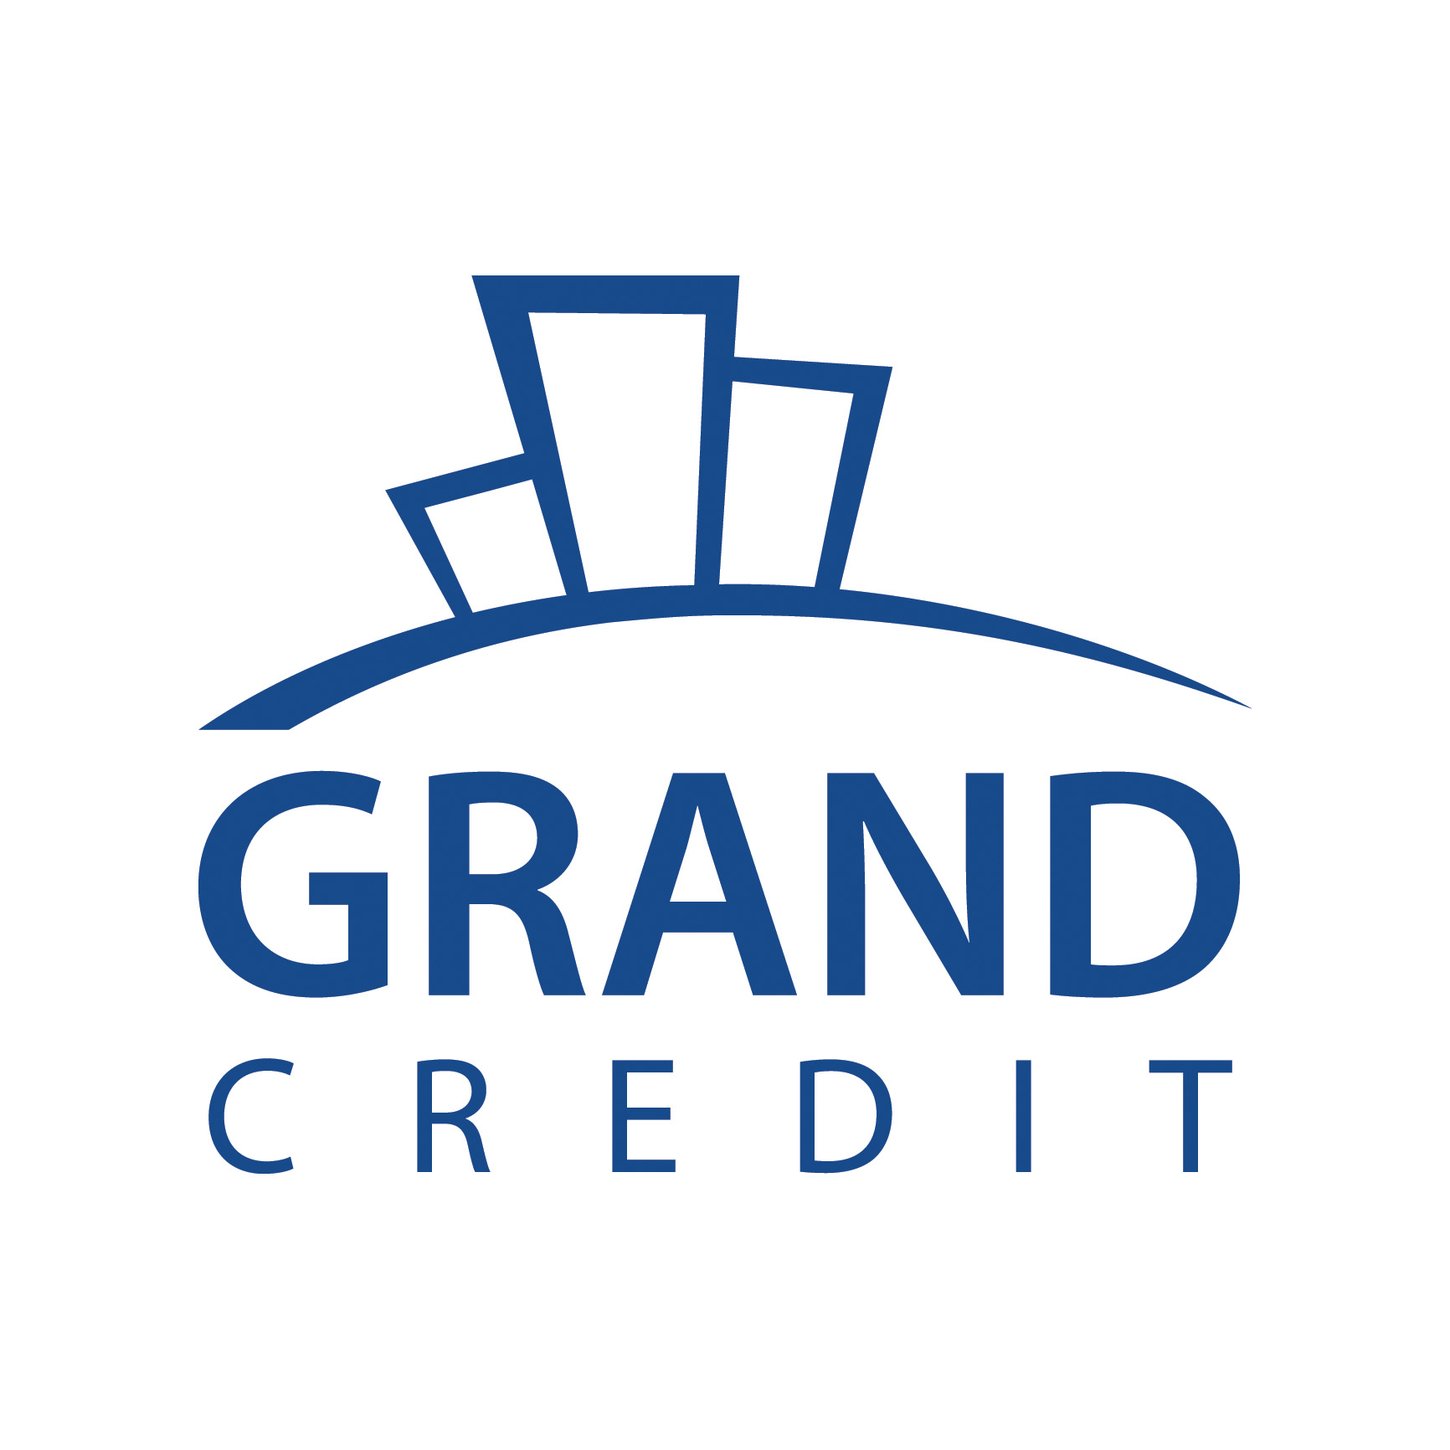 Grand Credit finansē ekonomiskās klases pirkumus